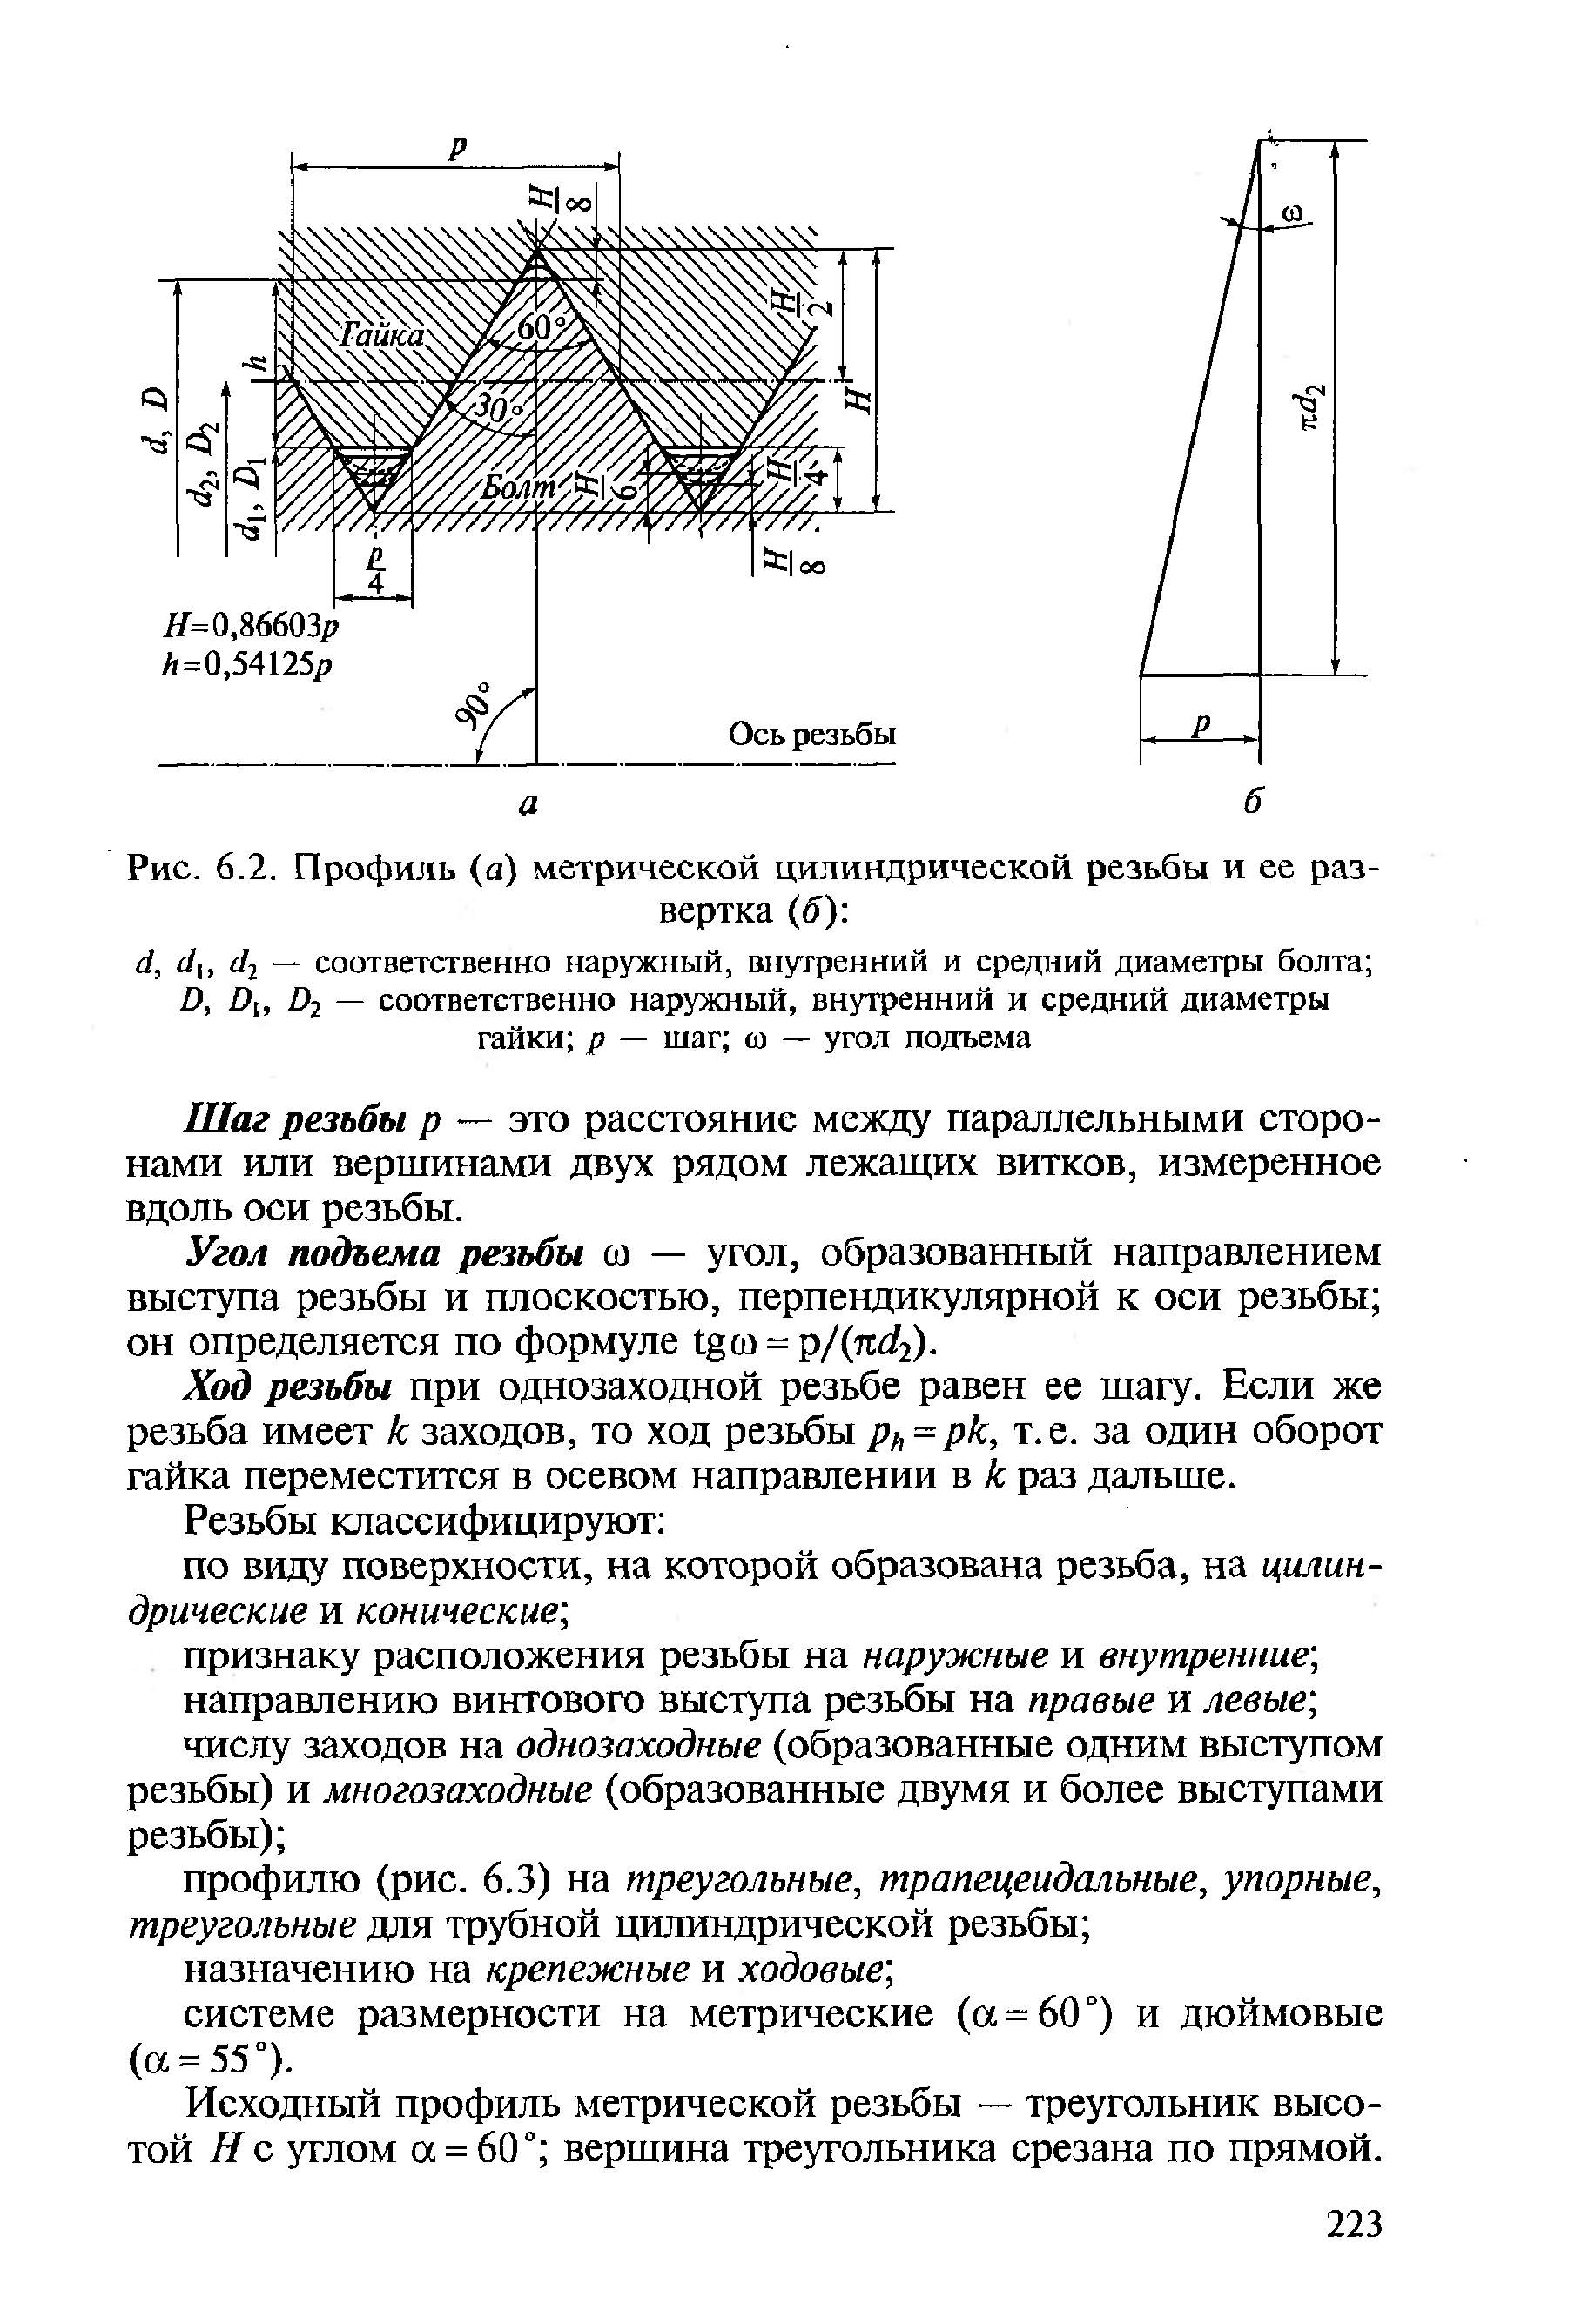 Рис. 6.2. Профиль (а) метрической цилиндрической резьбы и ее развертка (б) 
